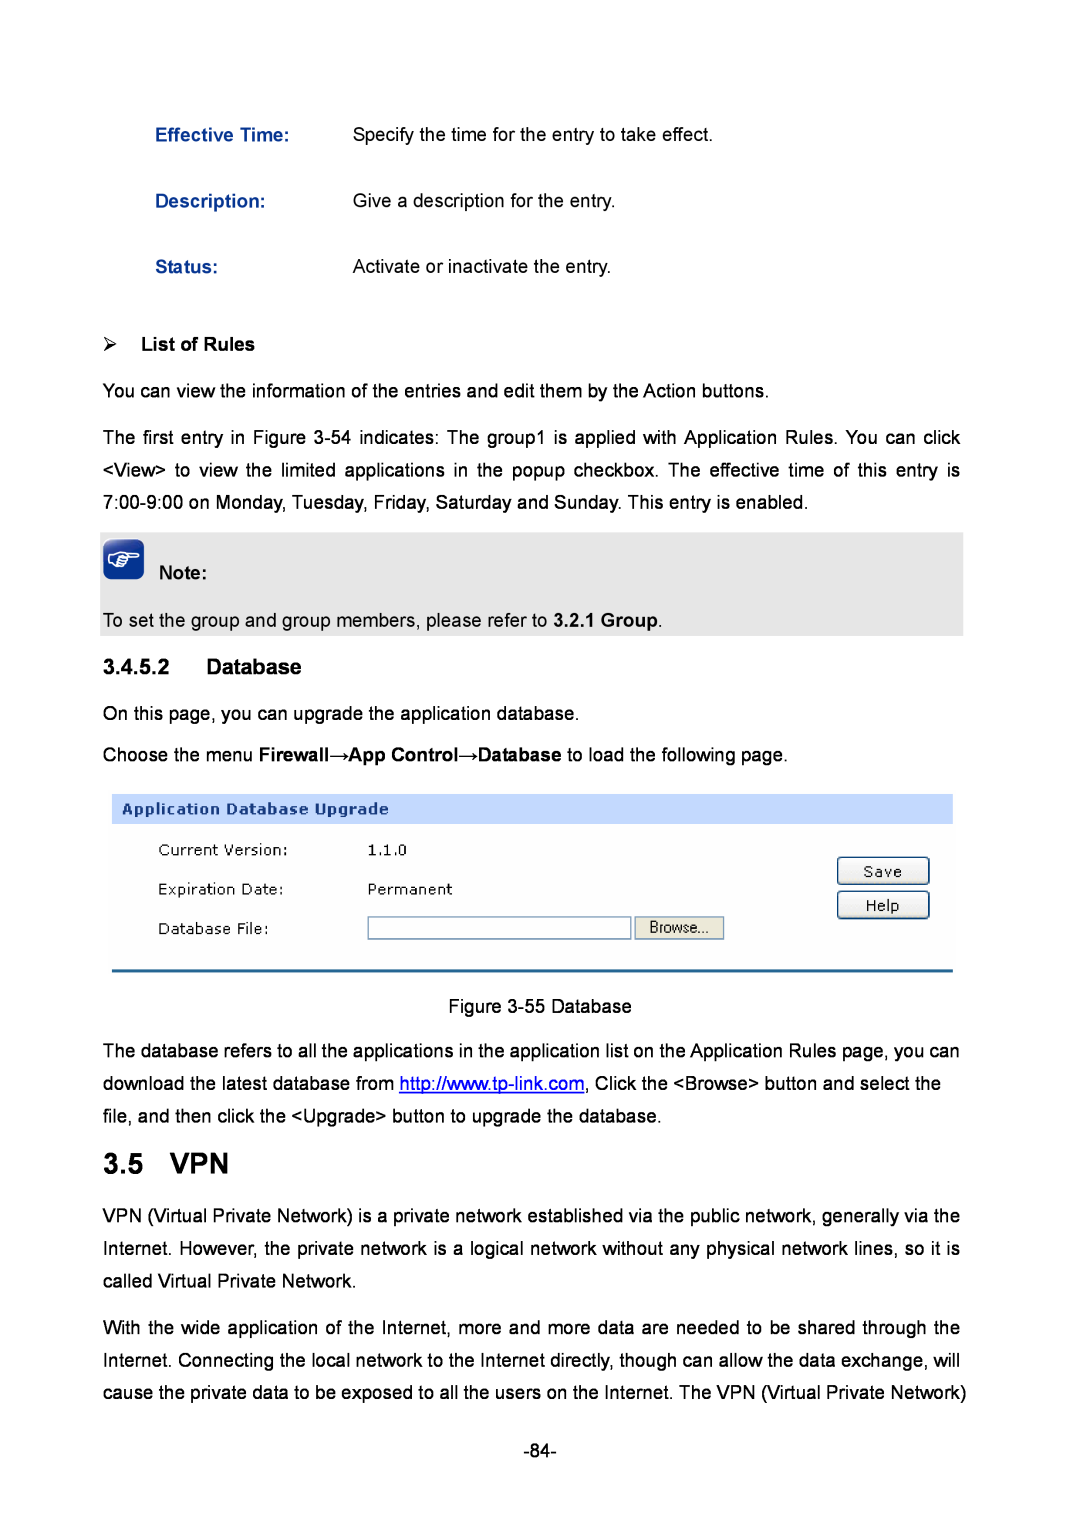 TP-Link TL-ER6120 manual 3.5 VPN, Database, ¾ List of Rules 